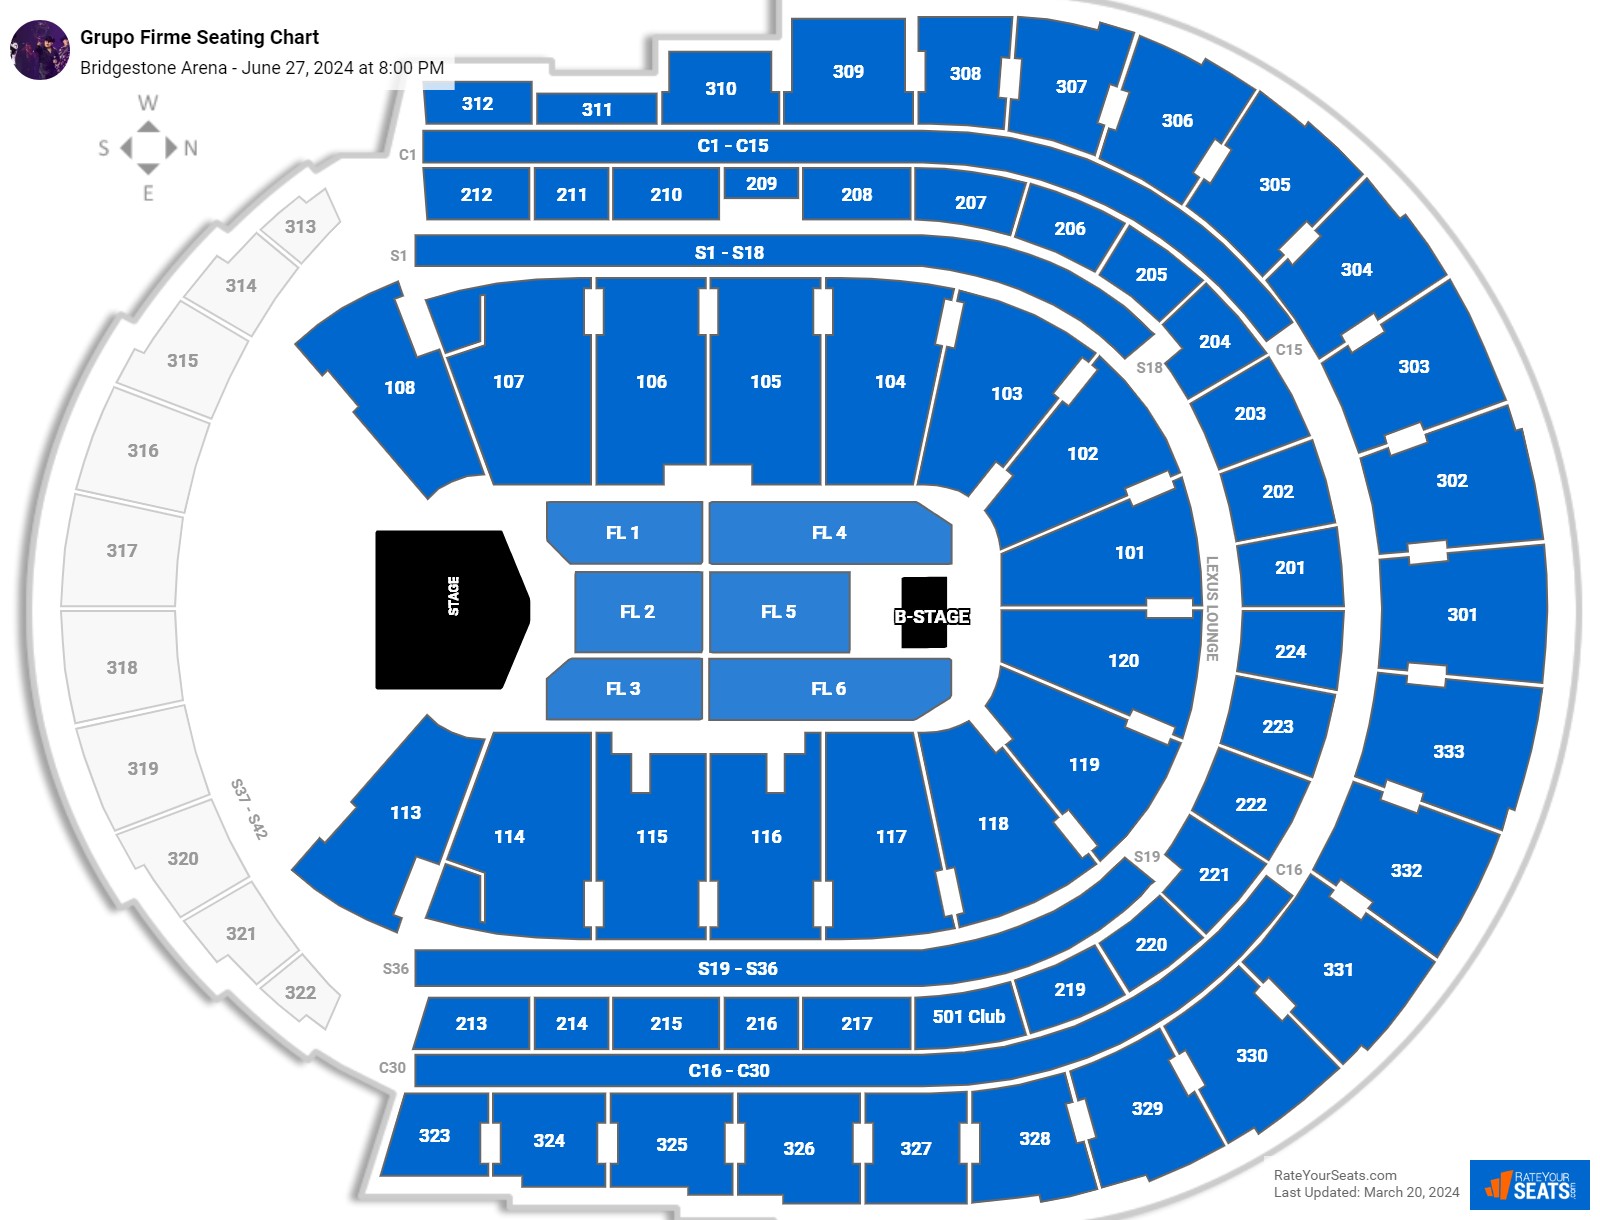 Bridgestone Arena Concert Seating Chart - RateYourSeats.com